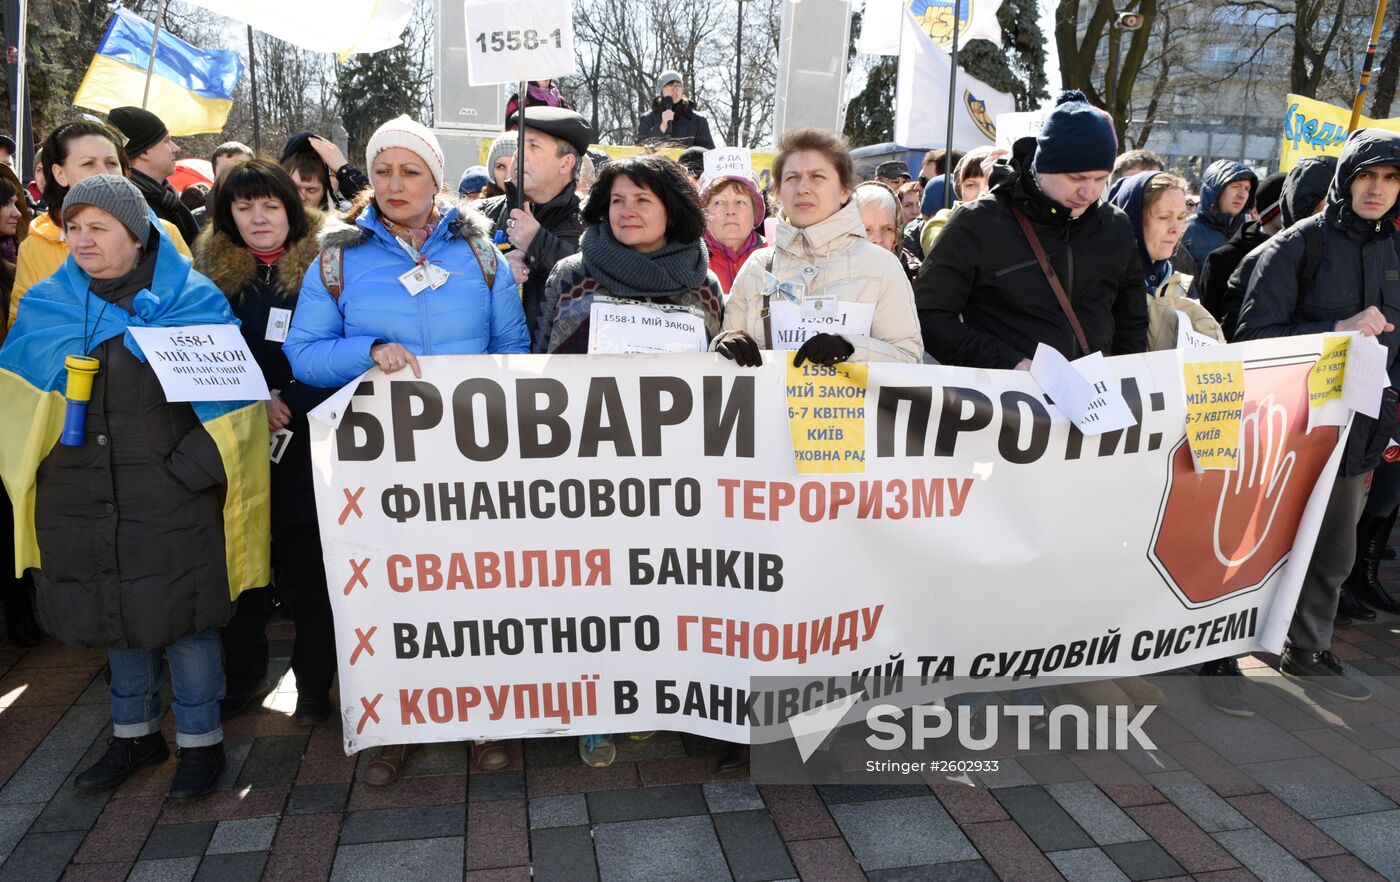 "Financial Maidan" in Kiev